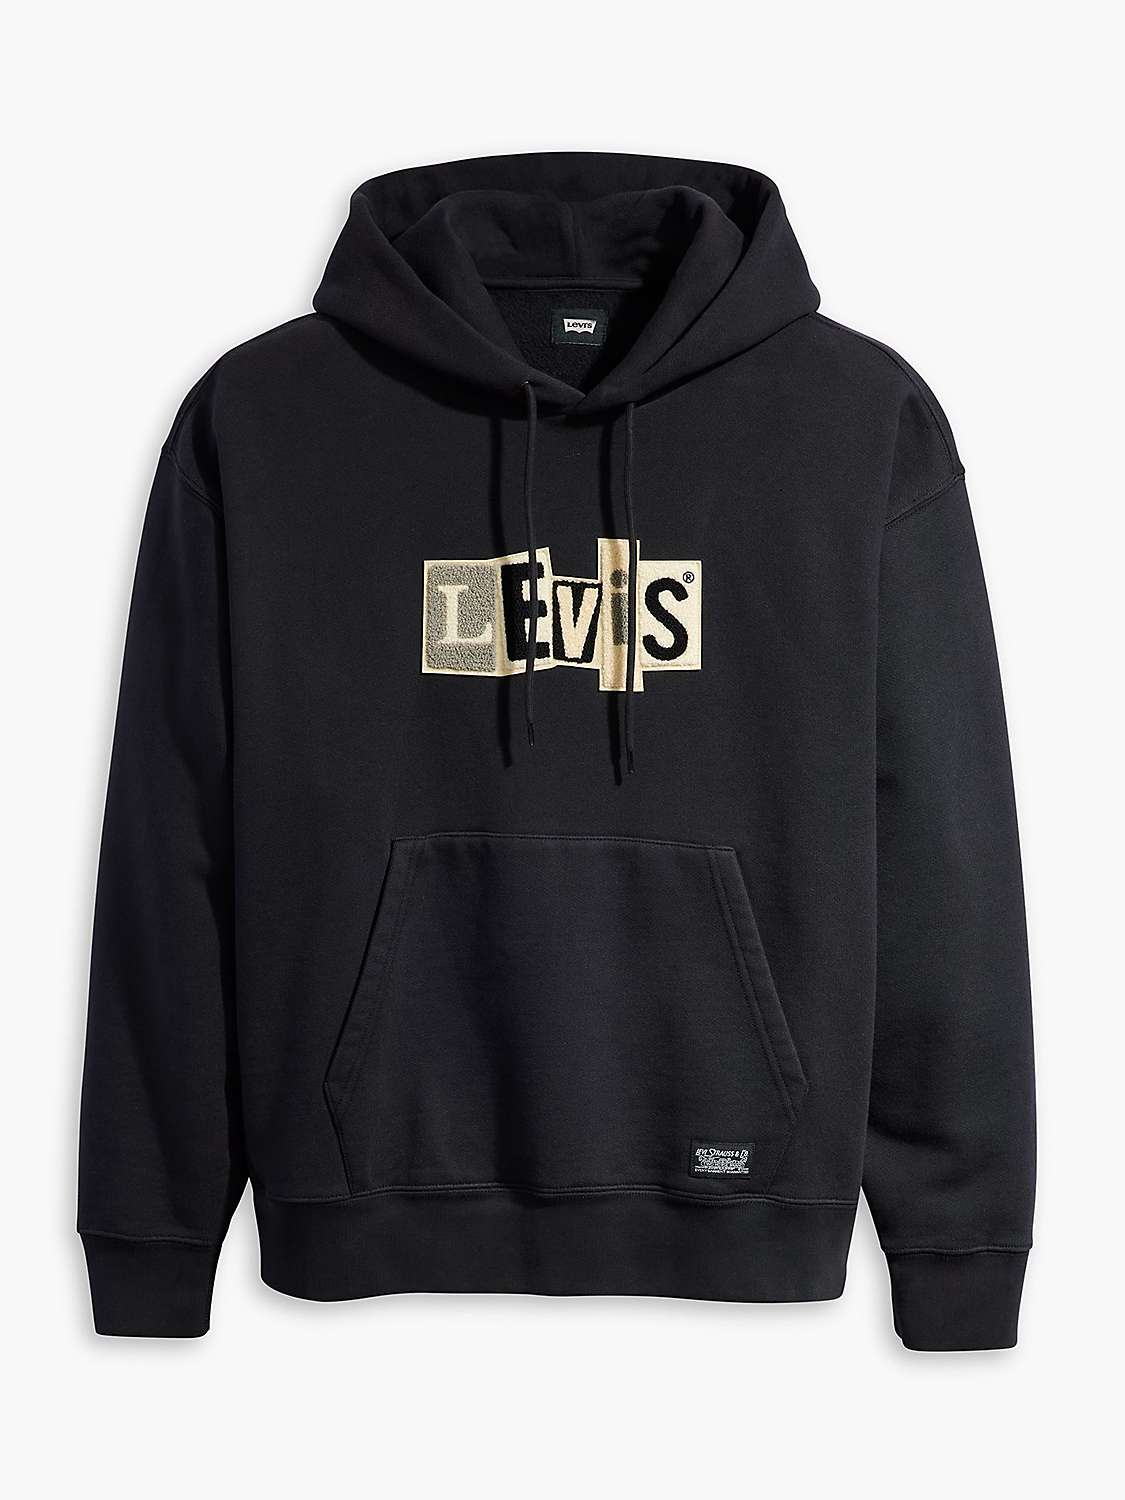 Buy Levi's Skate Hoodie, Black Online at johnlewis.com